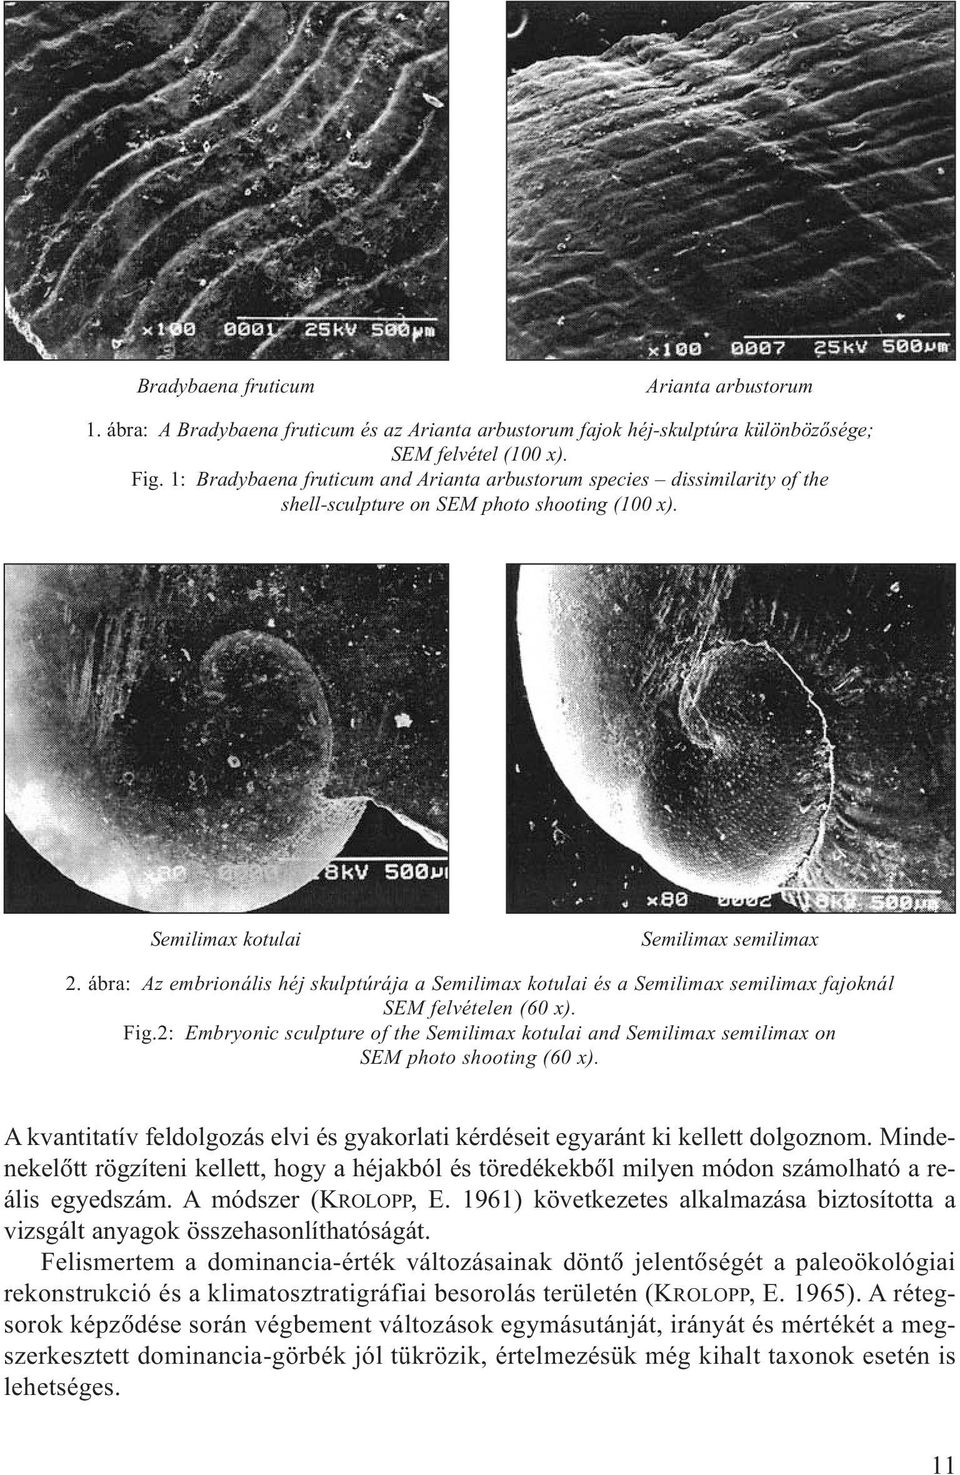 ábra: Az embrionális héj skulptúrája a Semilima kotulai és a Semilima semilima fajoknál SEM felvételen (60 ). Fig.